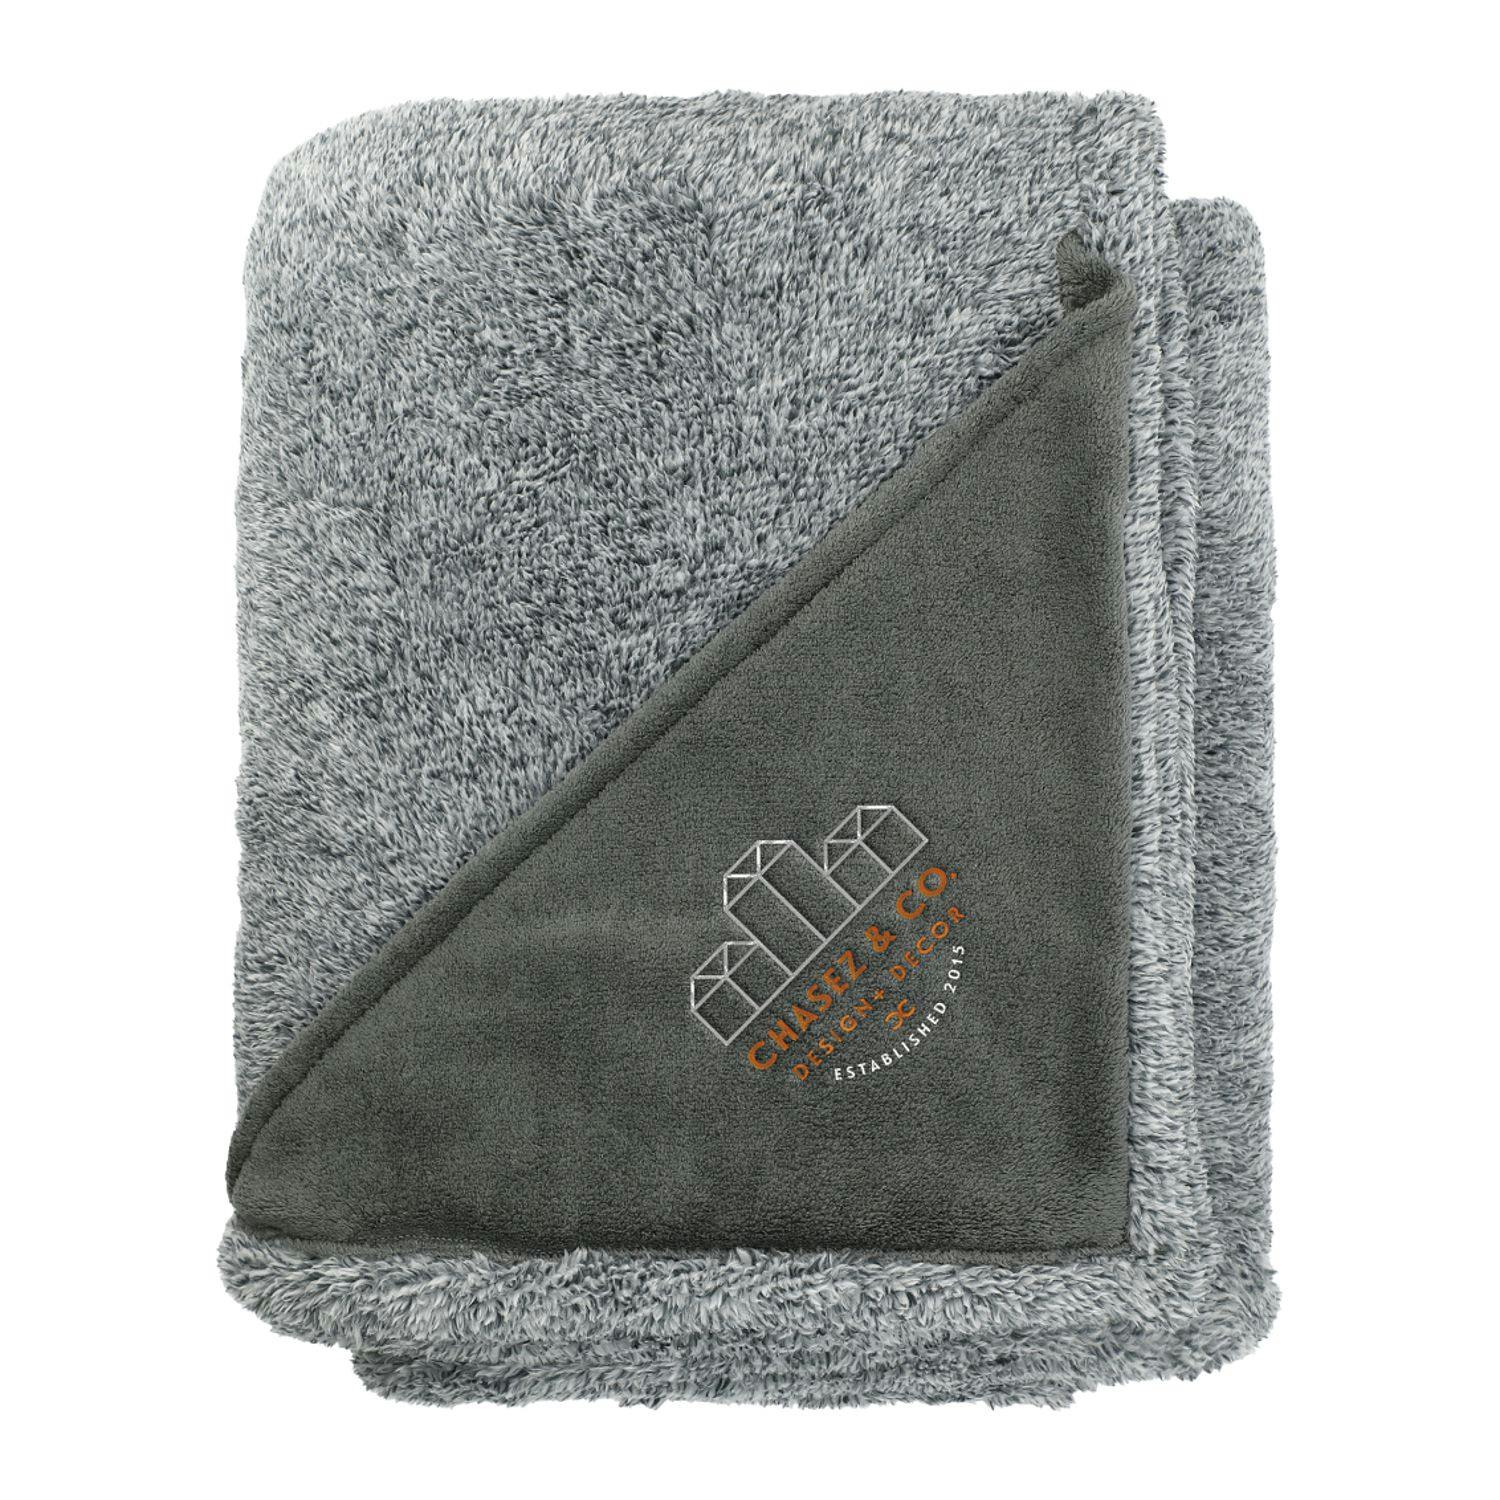 Heathered Fuzzy Fleece Blanket - additional Image 1